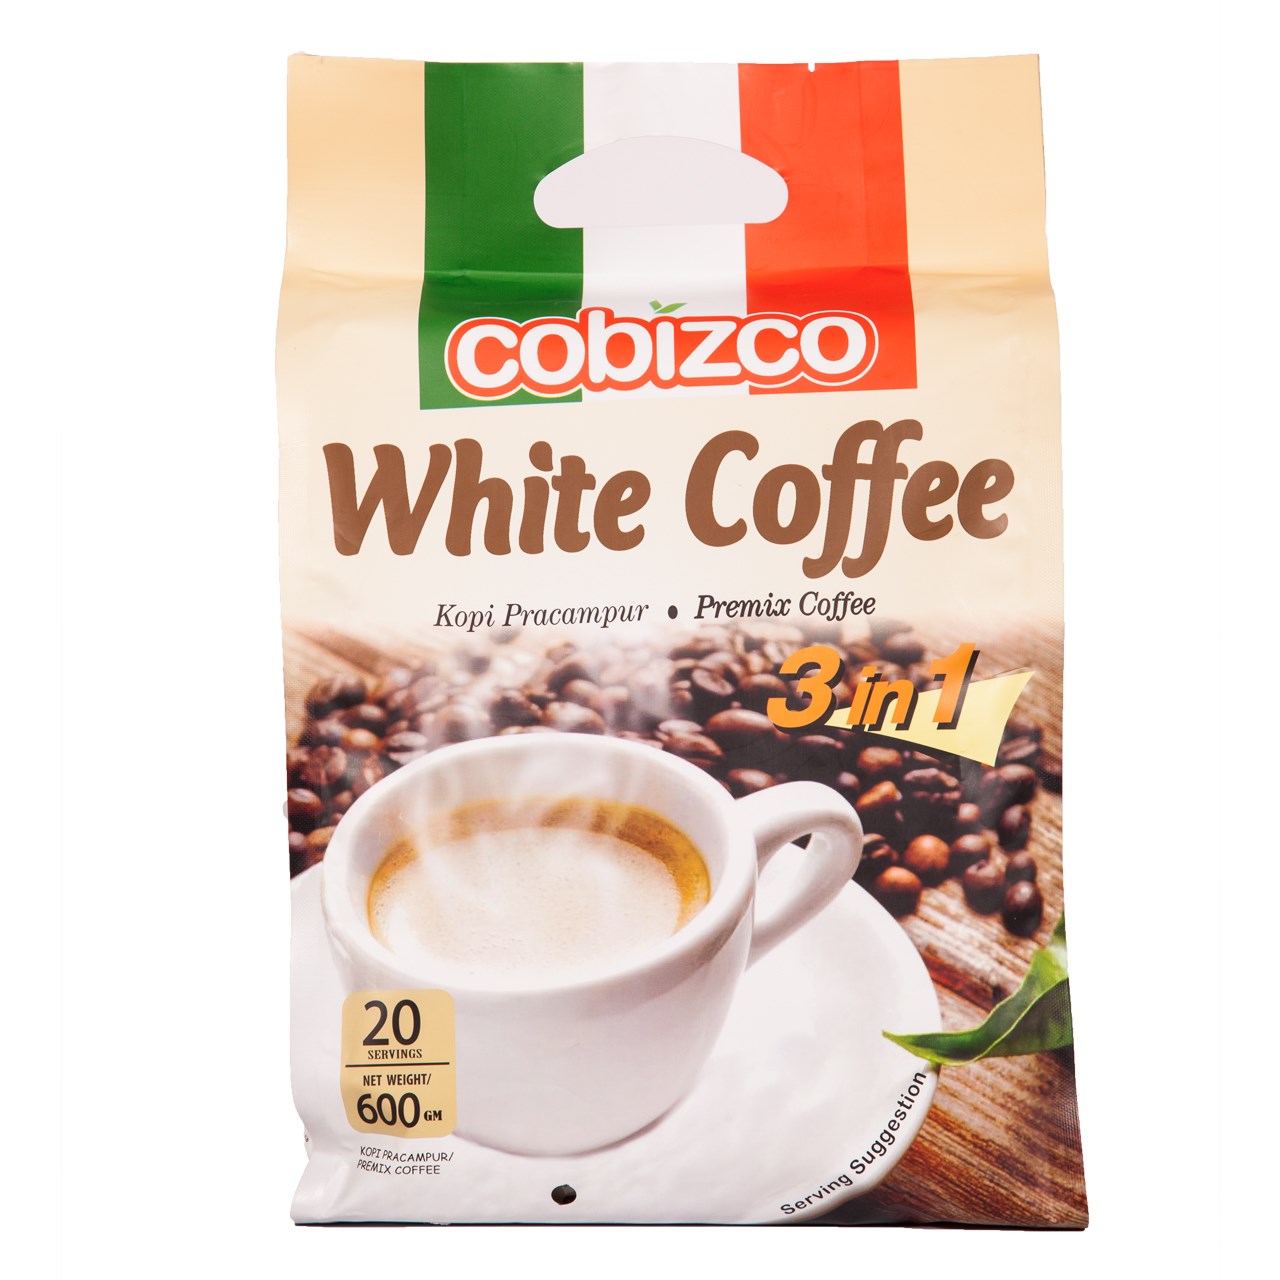 وایت کافی کوبیزکو مدل White Coffee